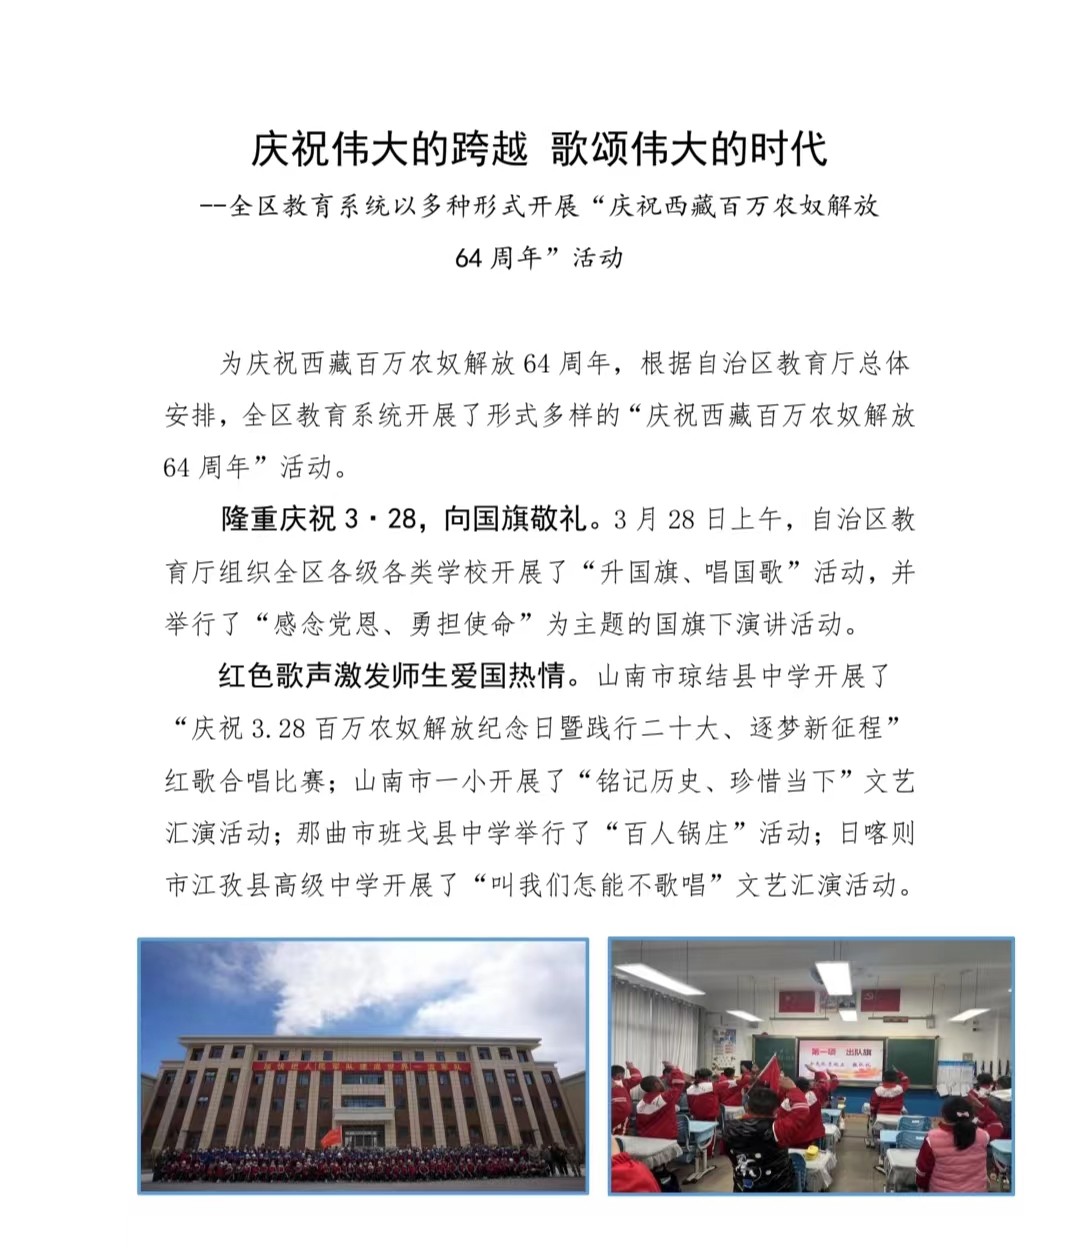 庆祝伟大的跨越 歌颂伟大的时代 –全区教育系统以多种形式开展“庆祝西藏百万农奴解放 64周年”活动